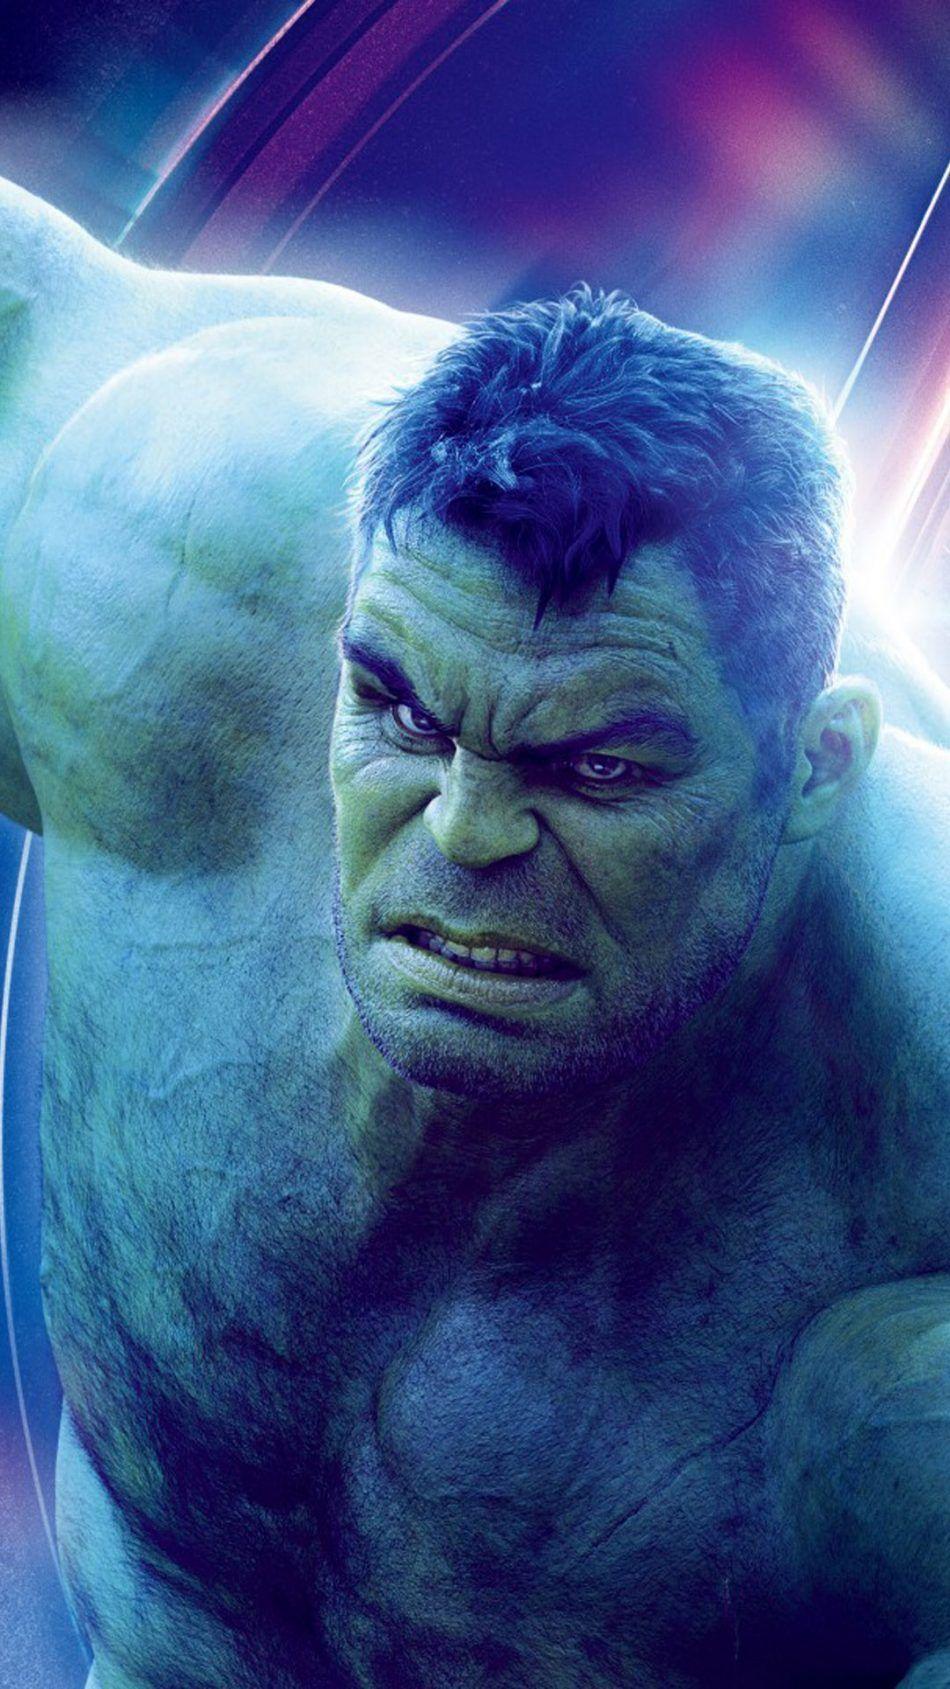 Hulk In Avengers Infinity War. Hulk avengers, Avengers picture, Hulk